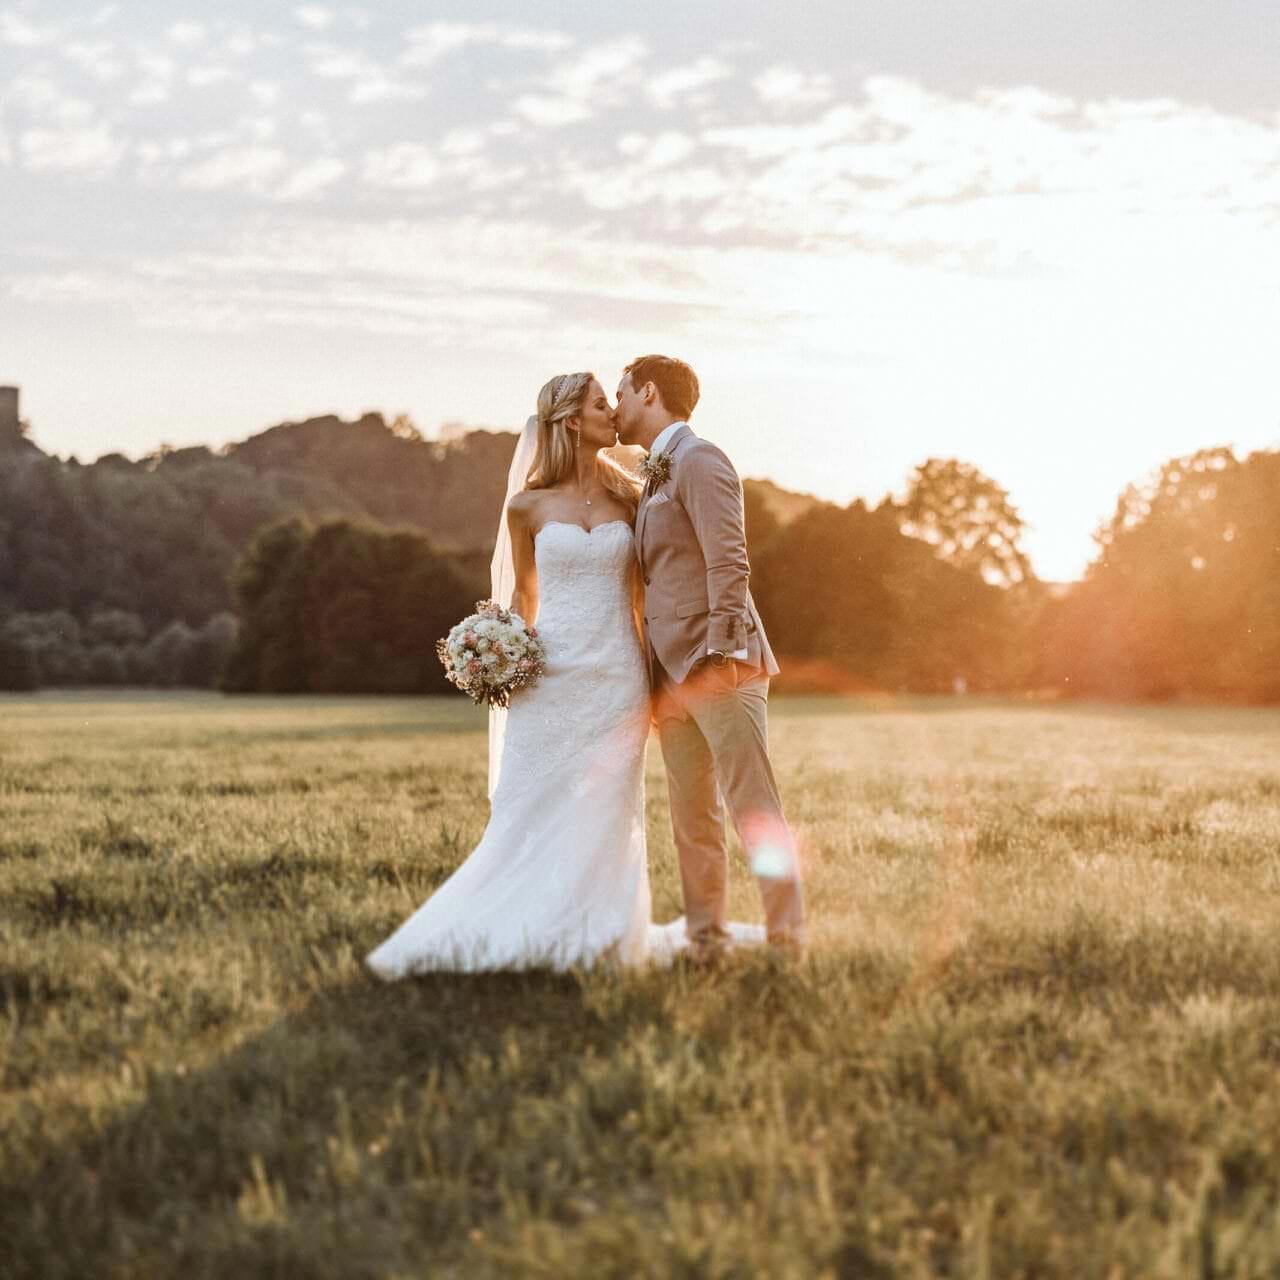 Hochzeitsfotograf Unna Hochzeit Heiraten Hochzeitsfotos - Hochzeitspaar küsst sich auf einer Wiese bei Sonnenuntergang. Bräutigam hat seine linke Hand in der Hosentasche. Die Braut hält ihren Blumenstrauß in der rechten Hand fest. Im Hintergrund ist Wald zu erkennen